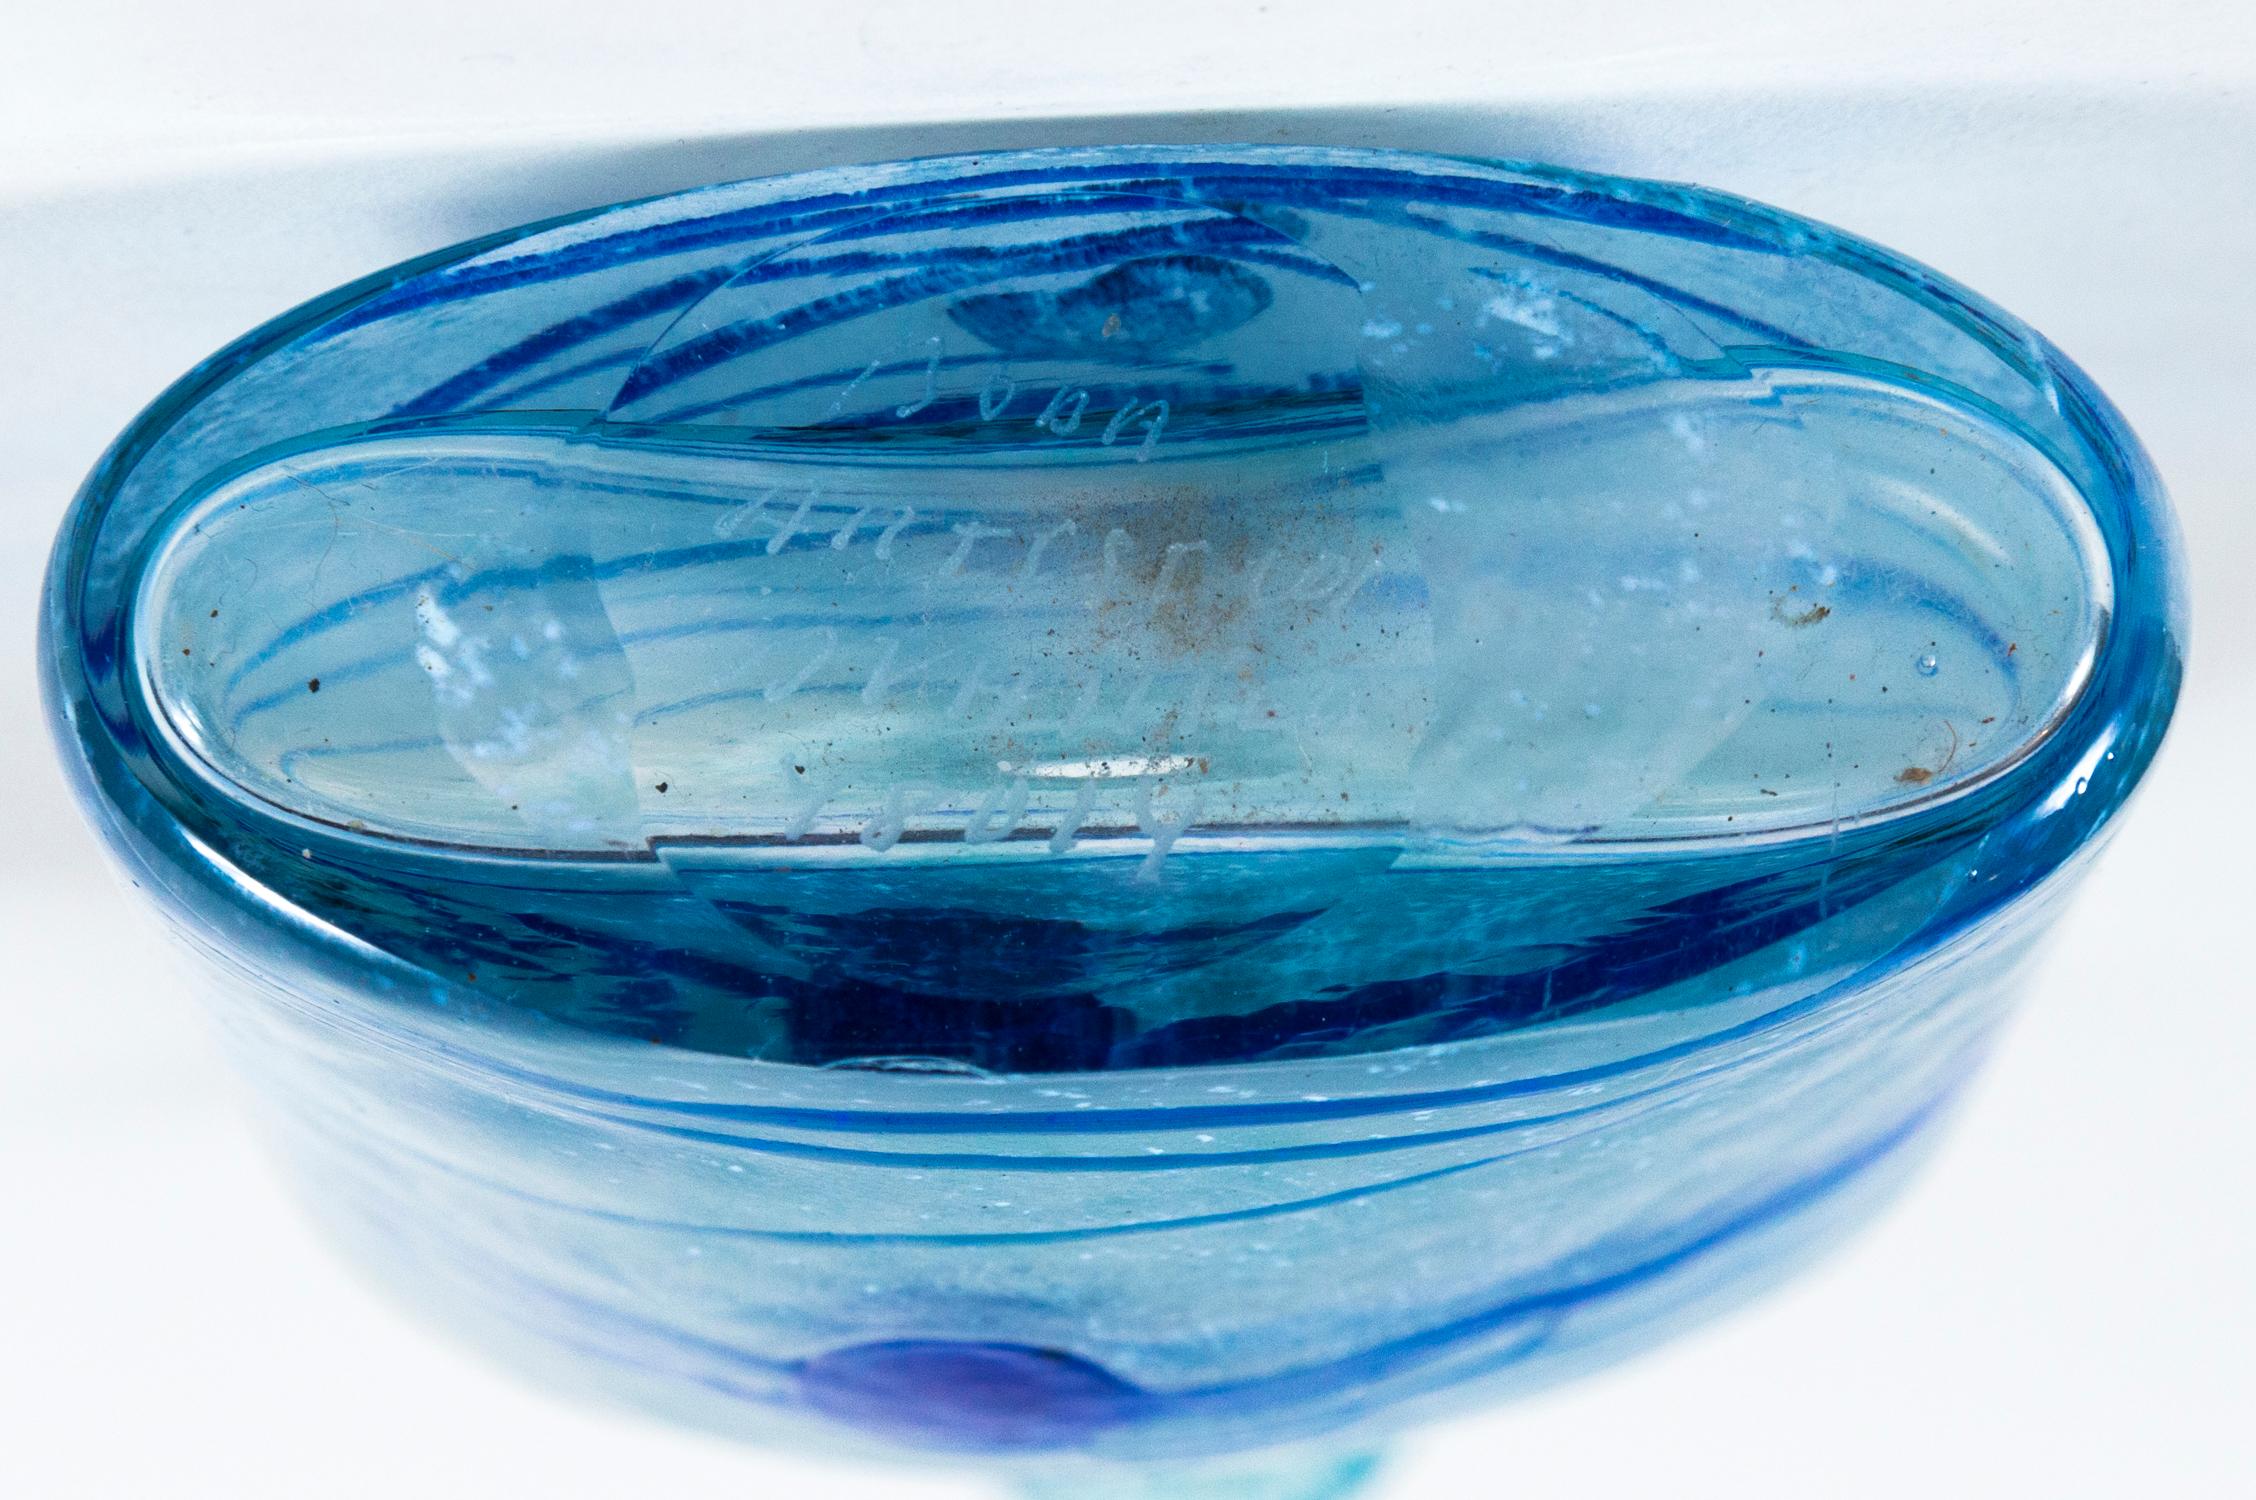 Vase en verre d'art, Bertil Vallien, Kosta Boda, Suède, vers 1970. Verre soufflé à la main givré avec un design abstrait appliqué bleu vif, série Galaxy. Signé en bas. Bertil Vallien (né en 1938) est un artiste verrier et designer suédois renommé,